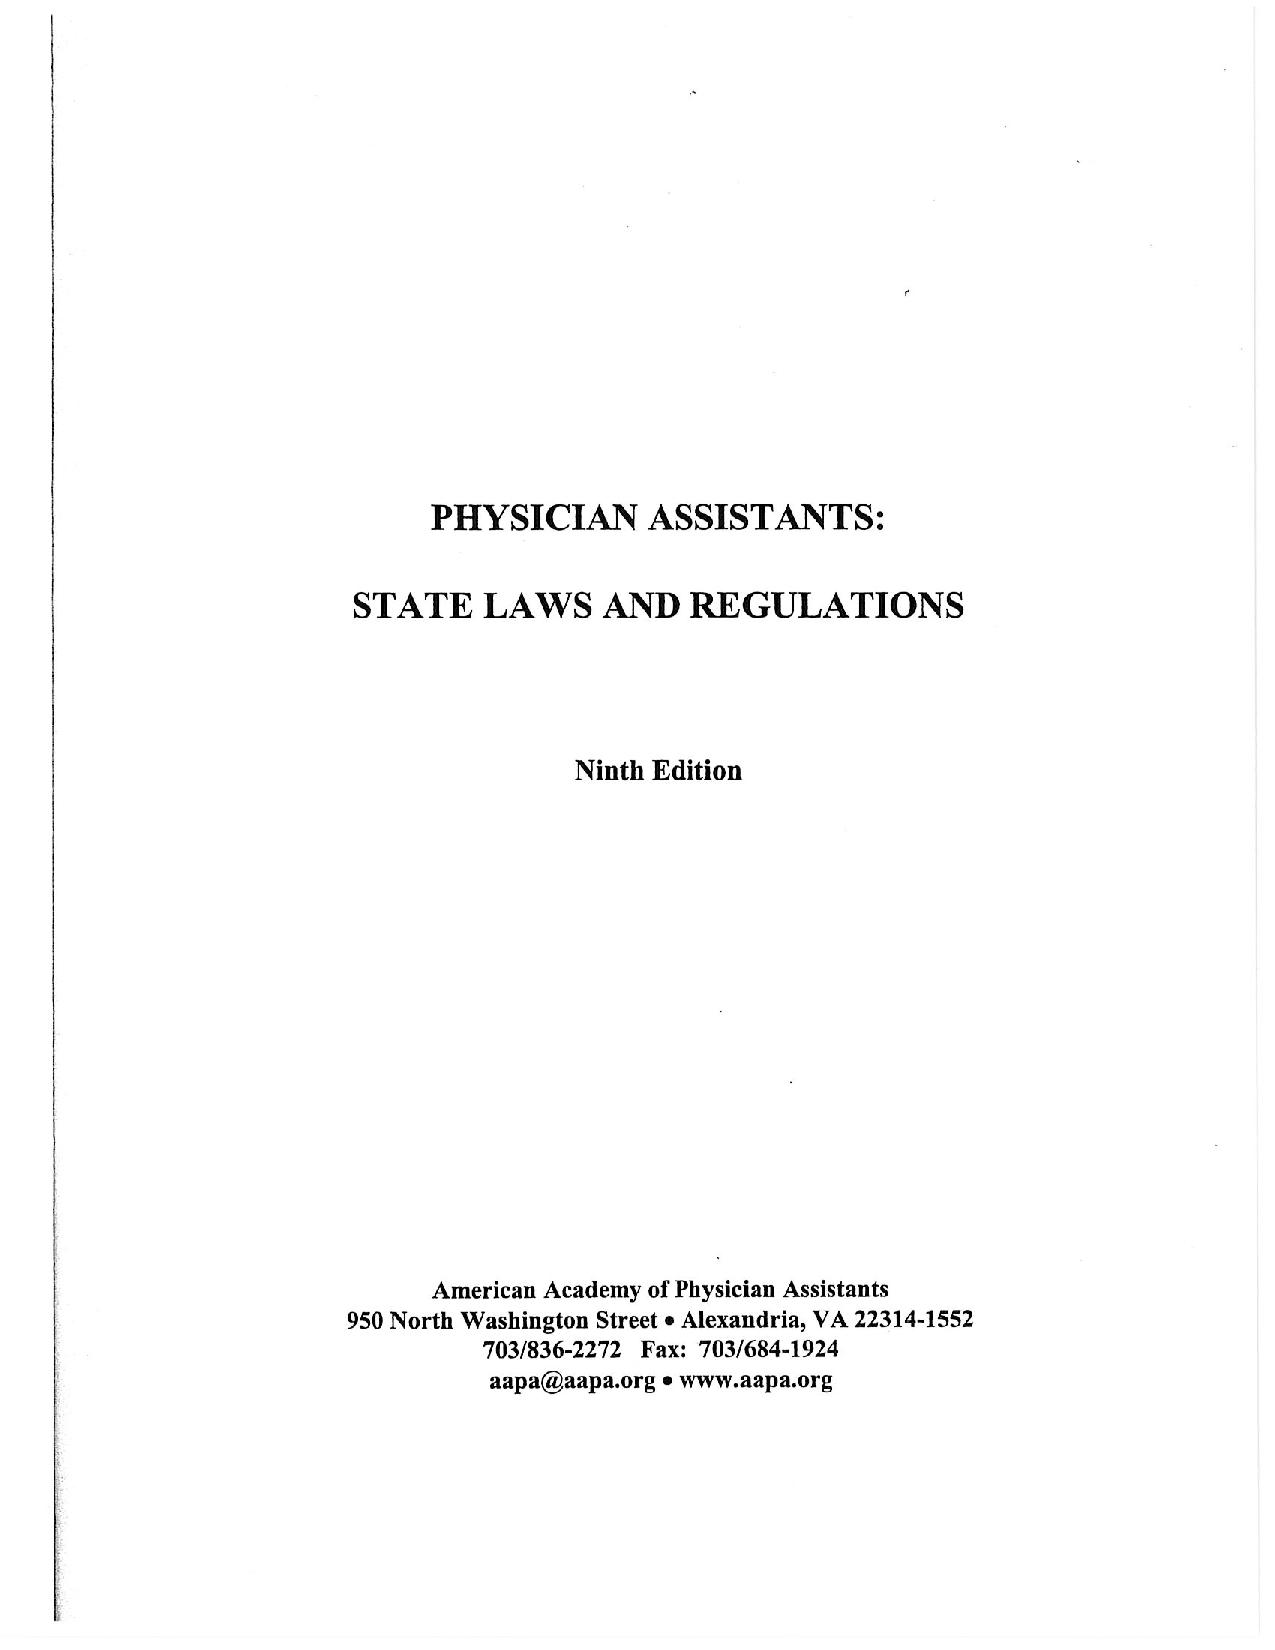 Leyes y reglamentos estatales de Pensilvania, 9.ª edición